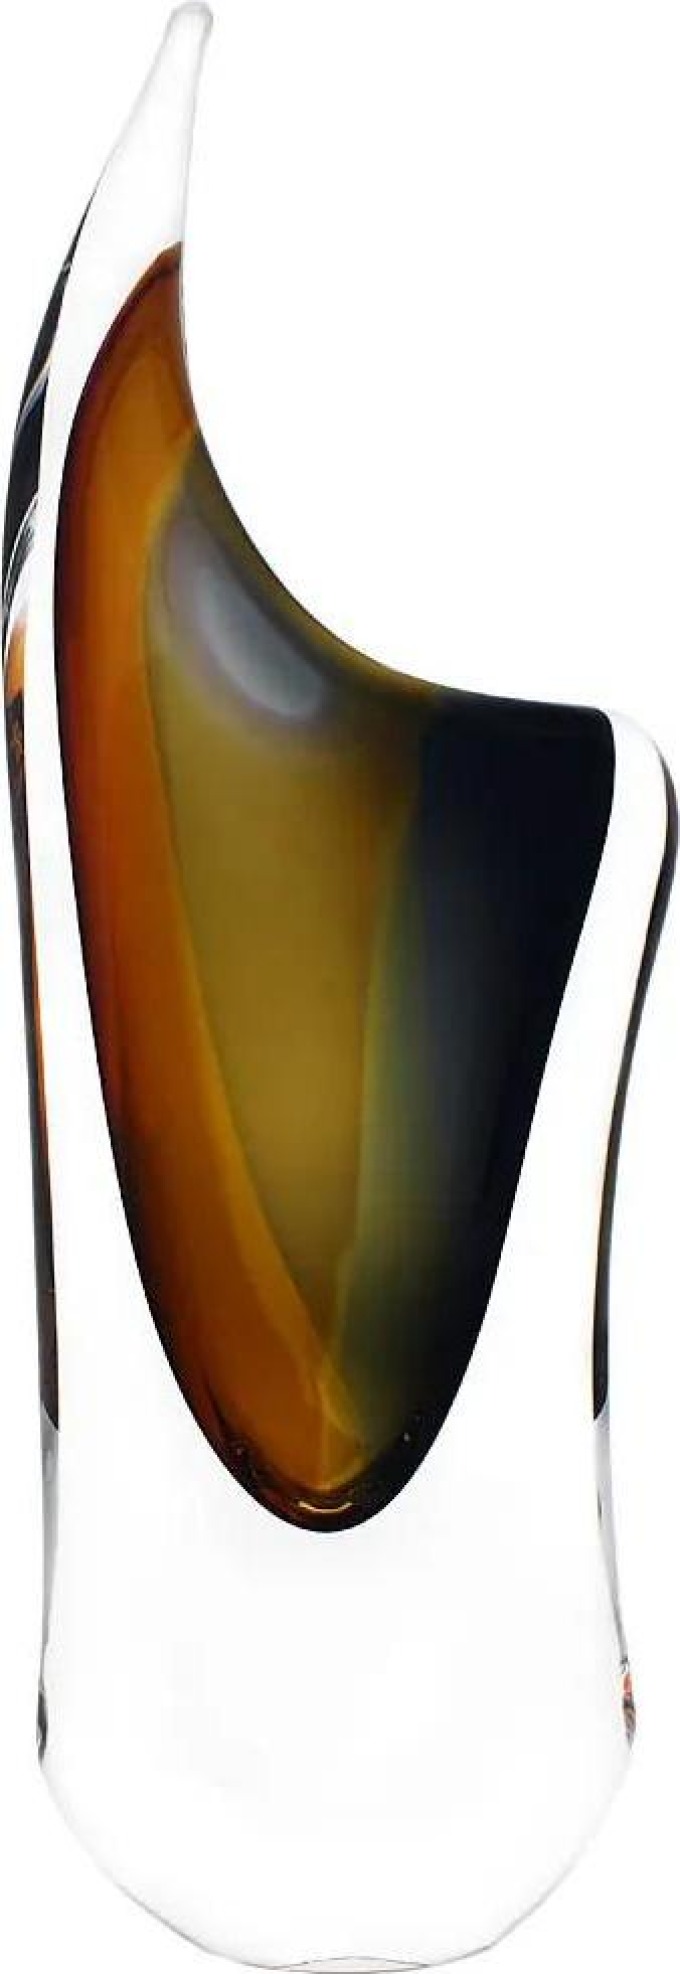 Skleněná váza hutní 04, zlatý topaz a kouřově černá, 29 cm | České hutní sklo od Artcristal Bohemia